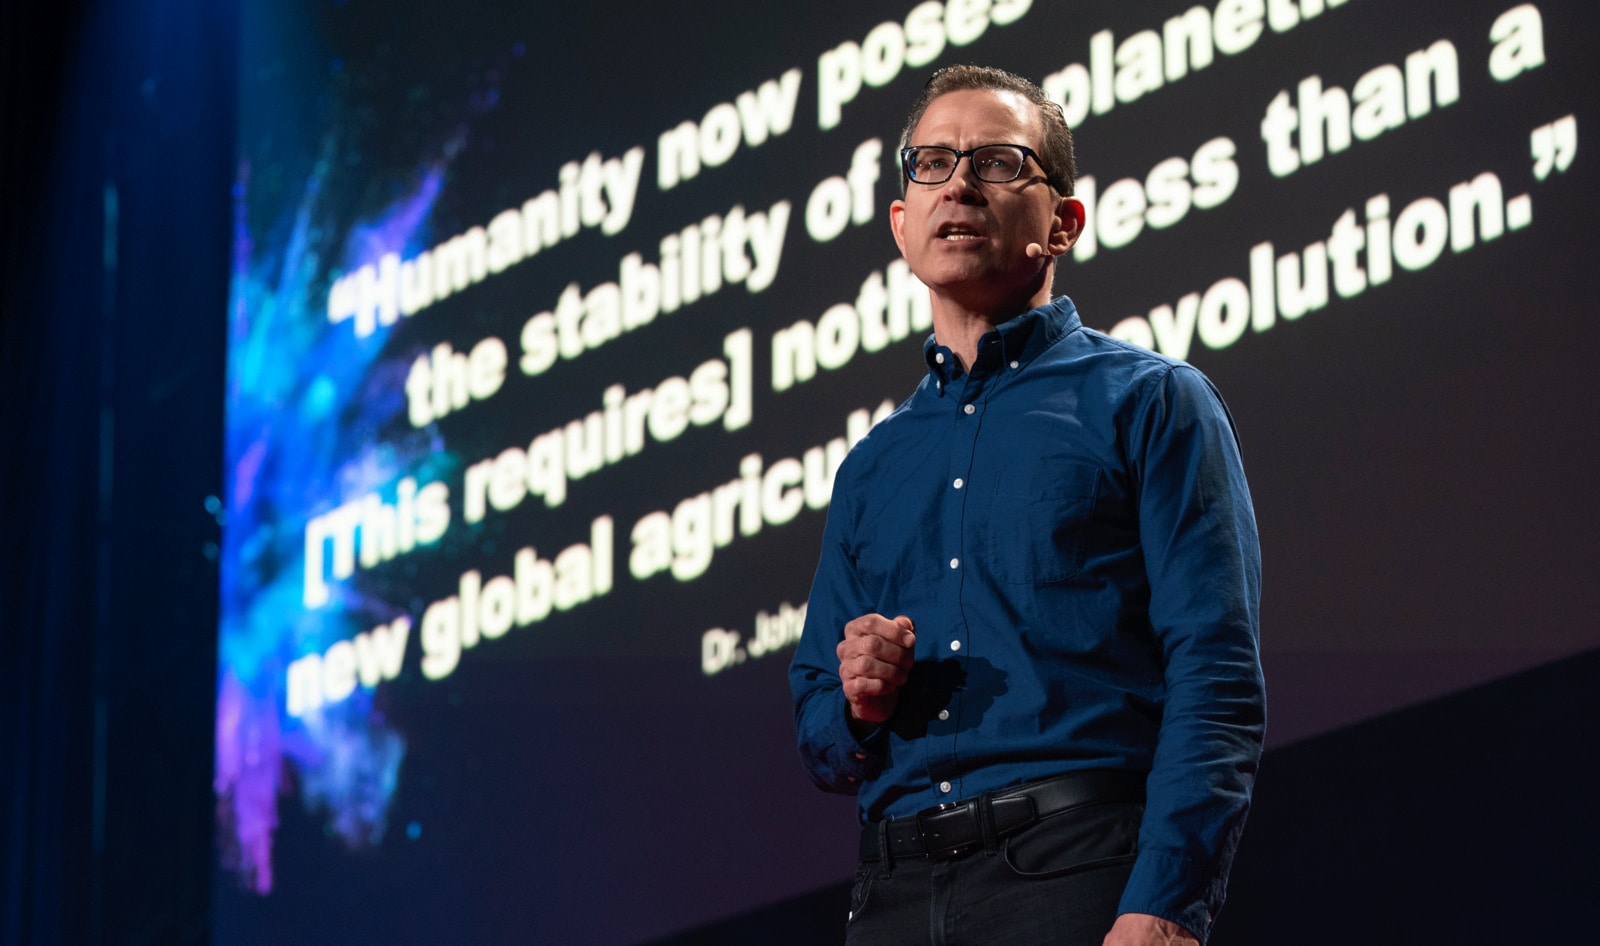 Vegan TED Talk Exceeds 500,000 Views in 24 Hours